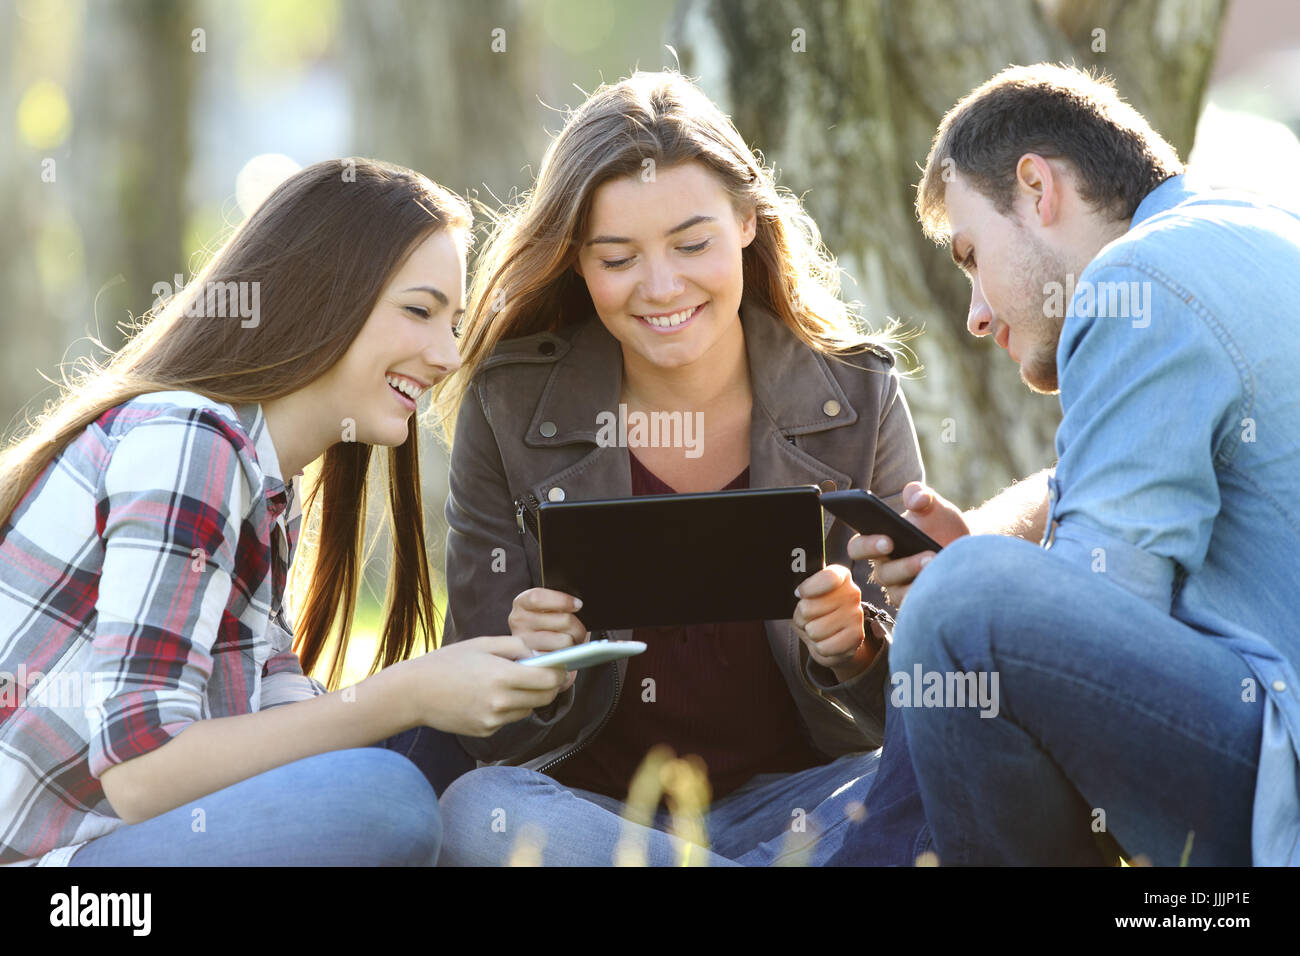 Trois amis à l'aide de plusieurs appareils à l'extérieur assis à l'extérieur dans un parc Banque D'Images